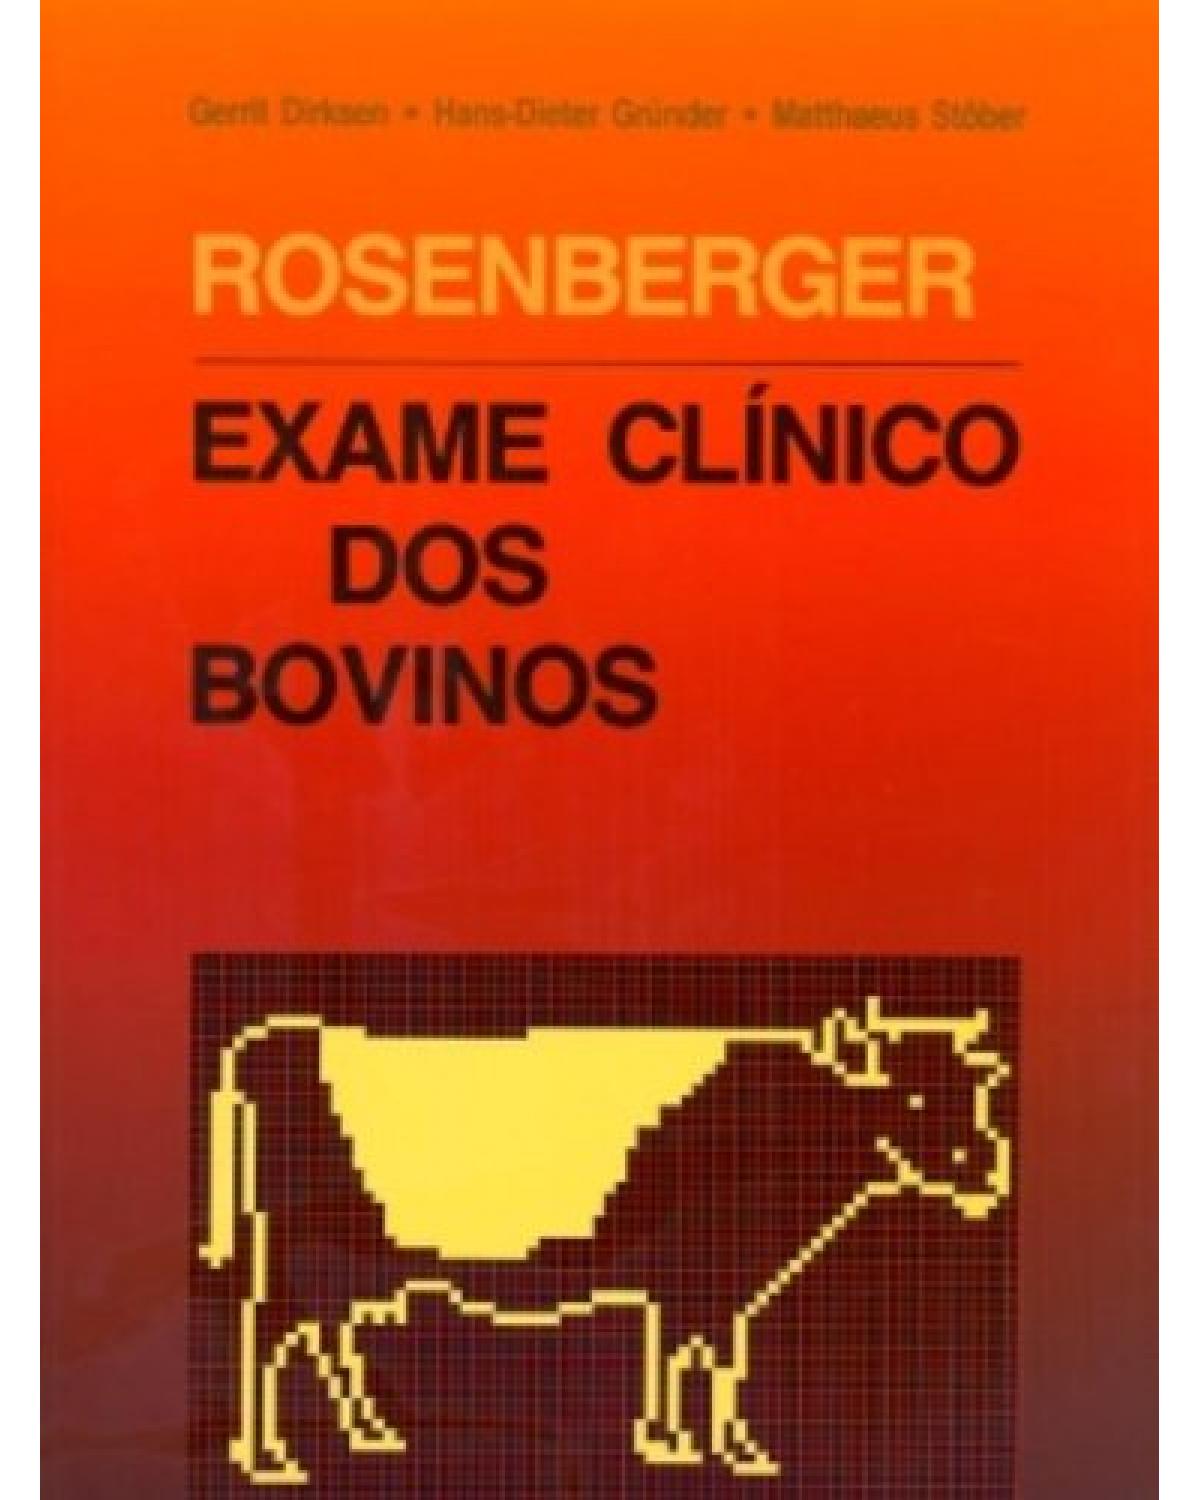 Rosenberger - Exame clínico dos bovinos - 3ª Edição | 1993